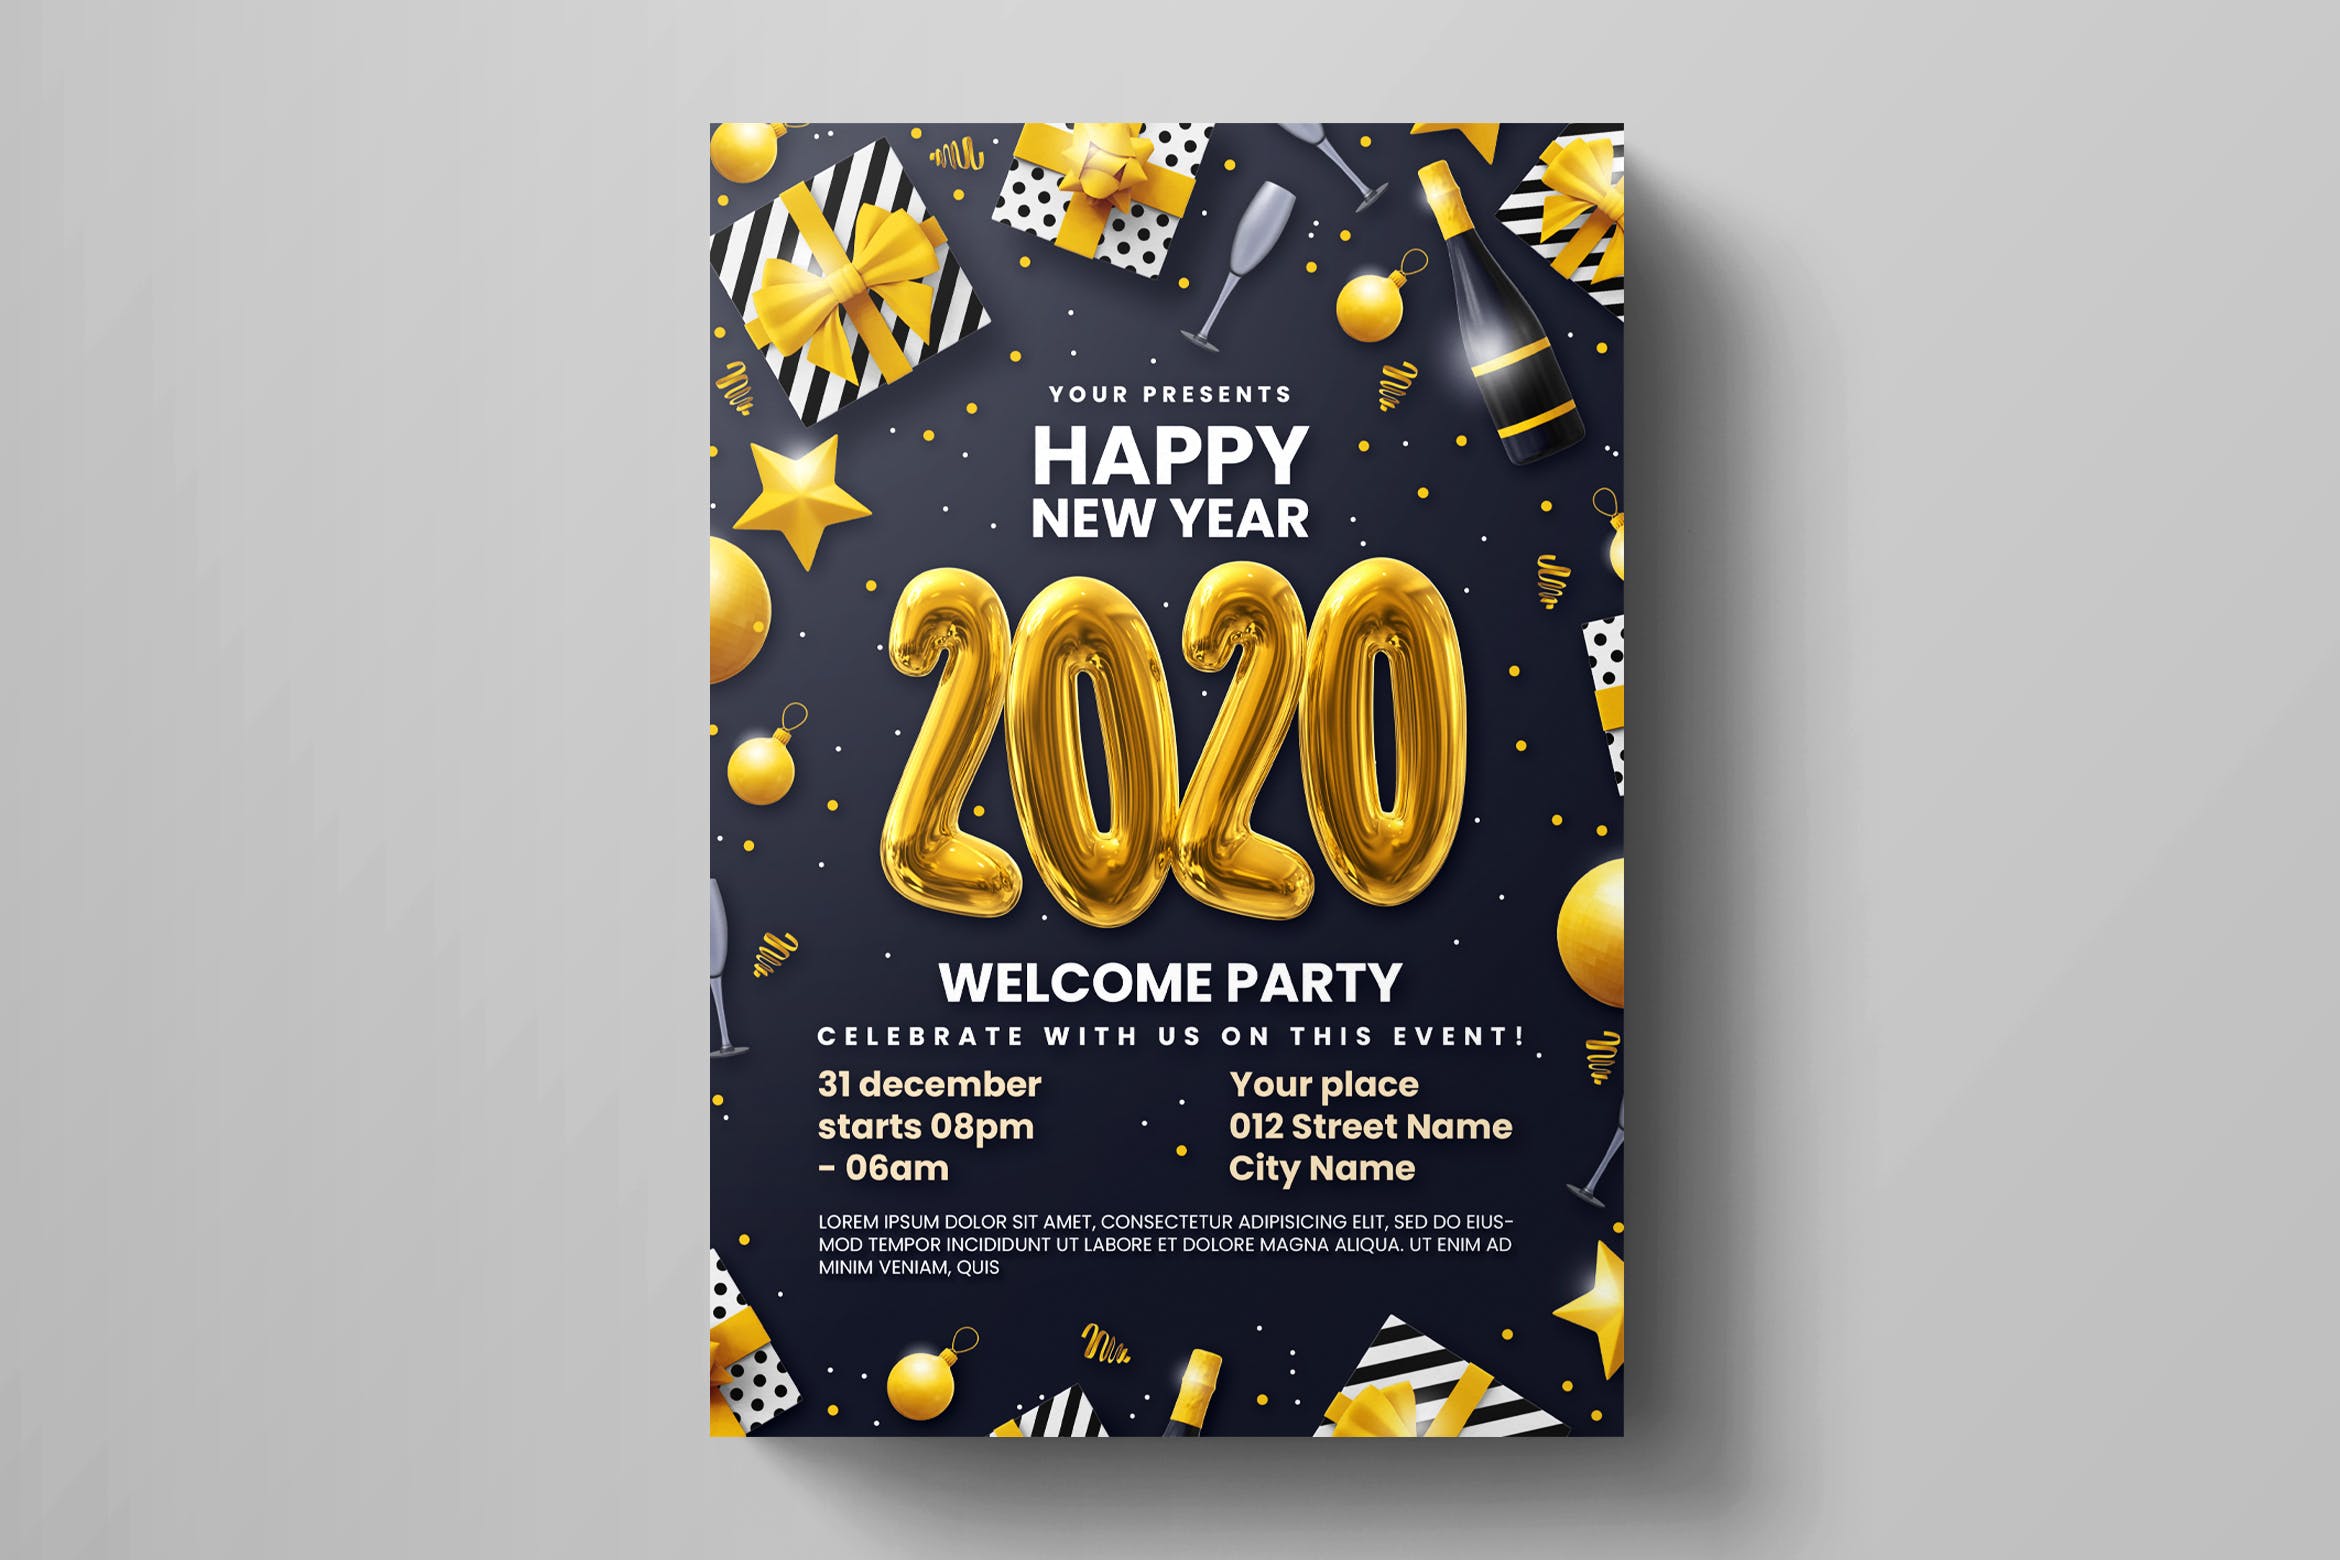 2020年新年活动派对浓厚节日氛围海报传单模板 New Year Party Flyer Template插图